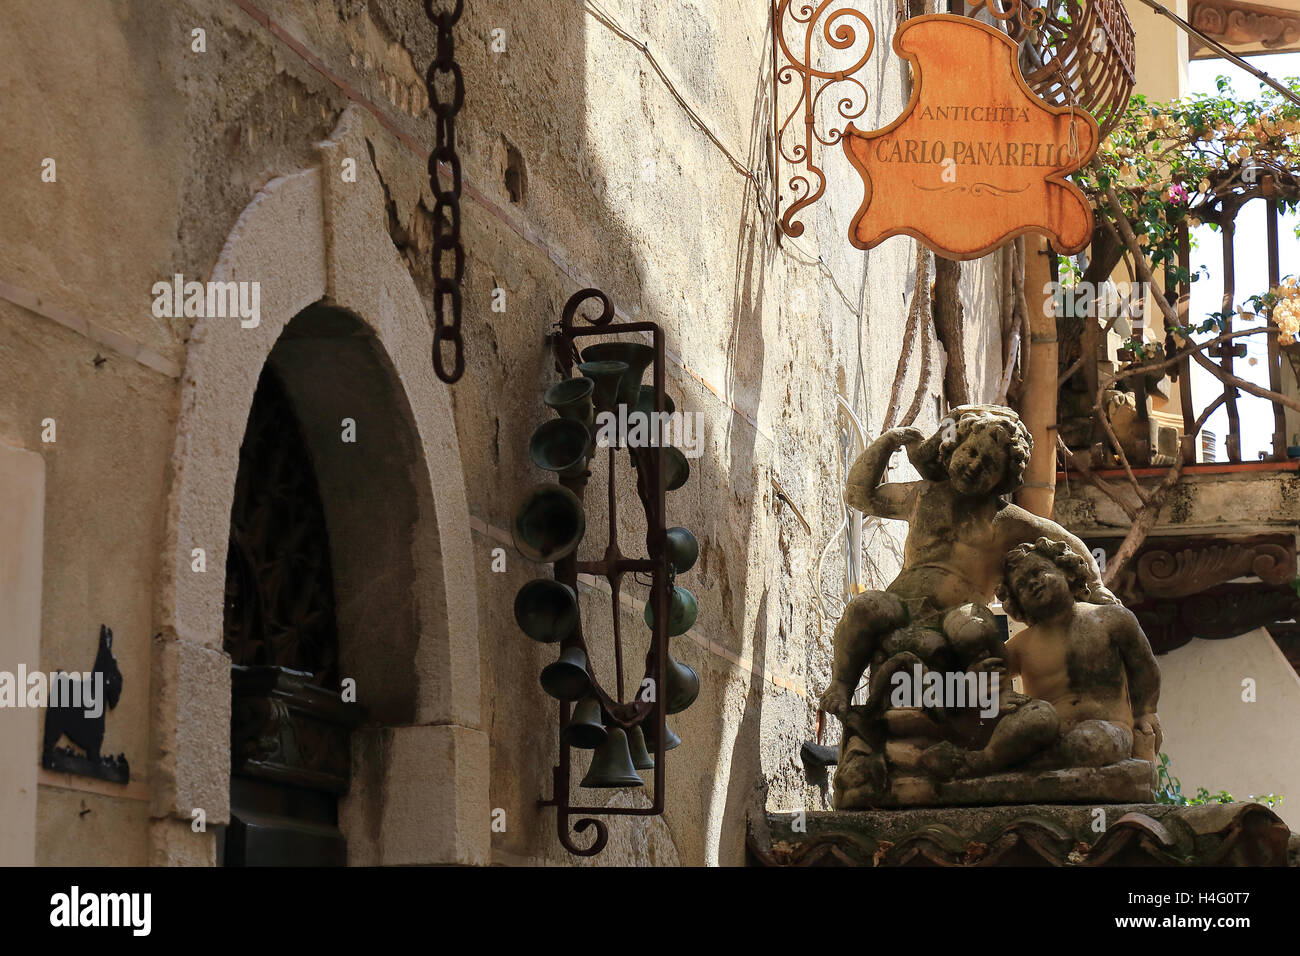 Negozio di antichità nella città di Taormina, Sicilia, Italia Foto Stock